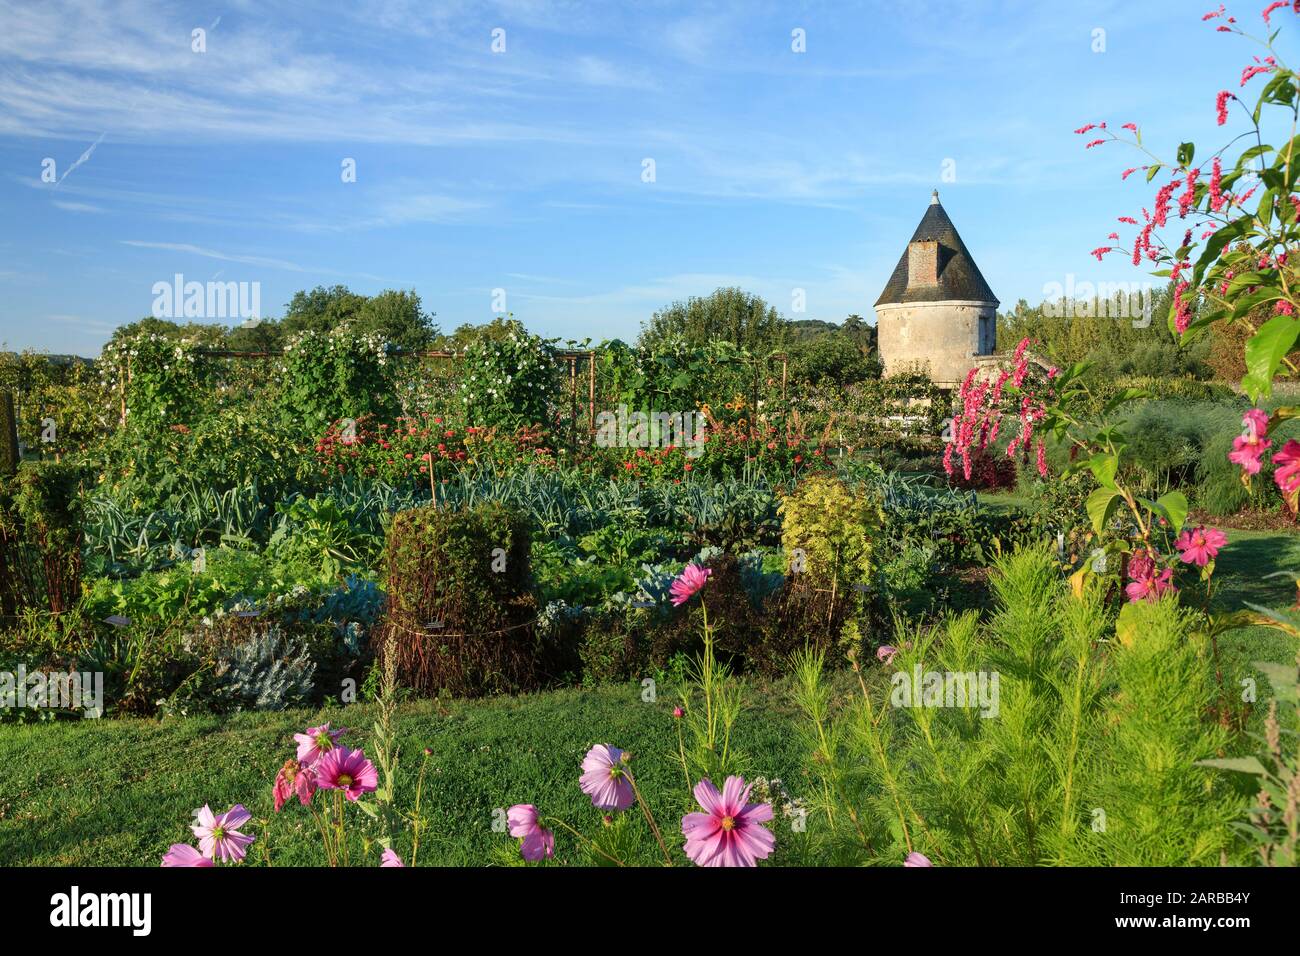 Francia, Indre et Loire, Chancay, Chateau de Valmer giardini, l'orto, verdure miste e fiori (menzione obbligatoria Chateau de Valmer) Foto Stock